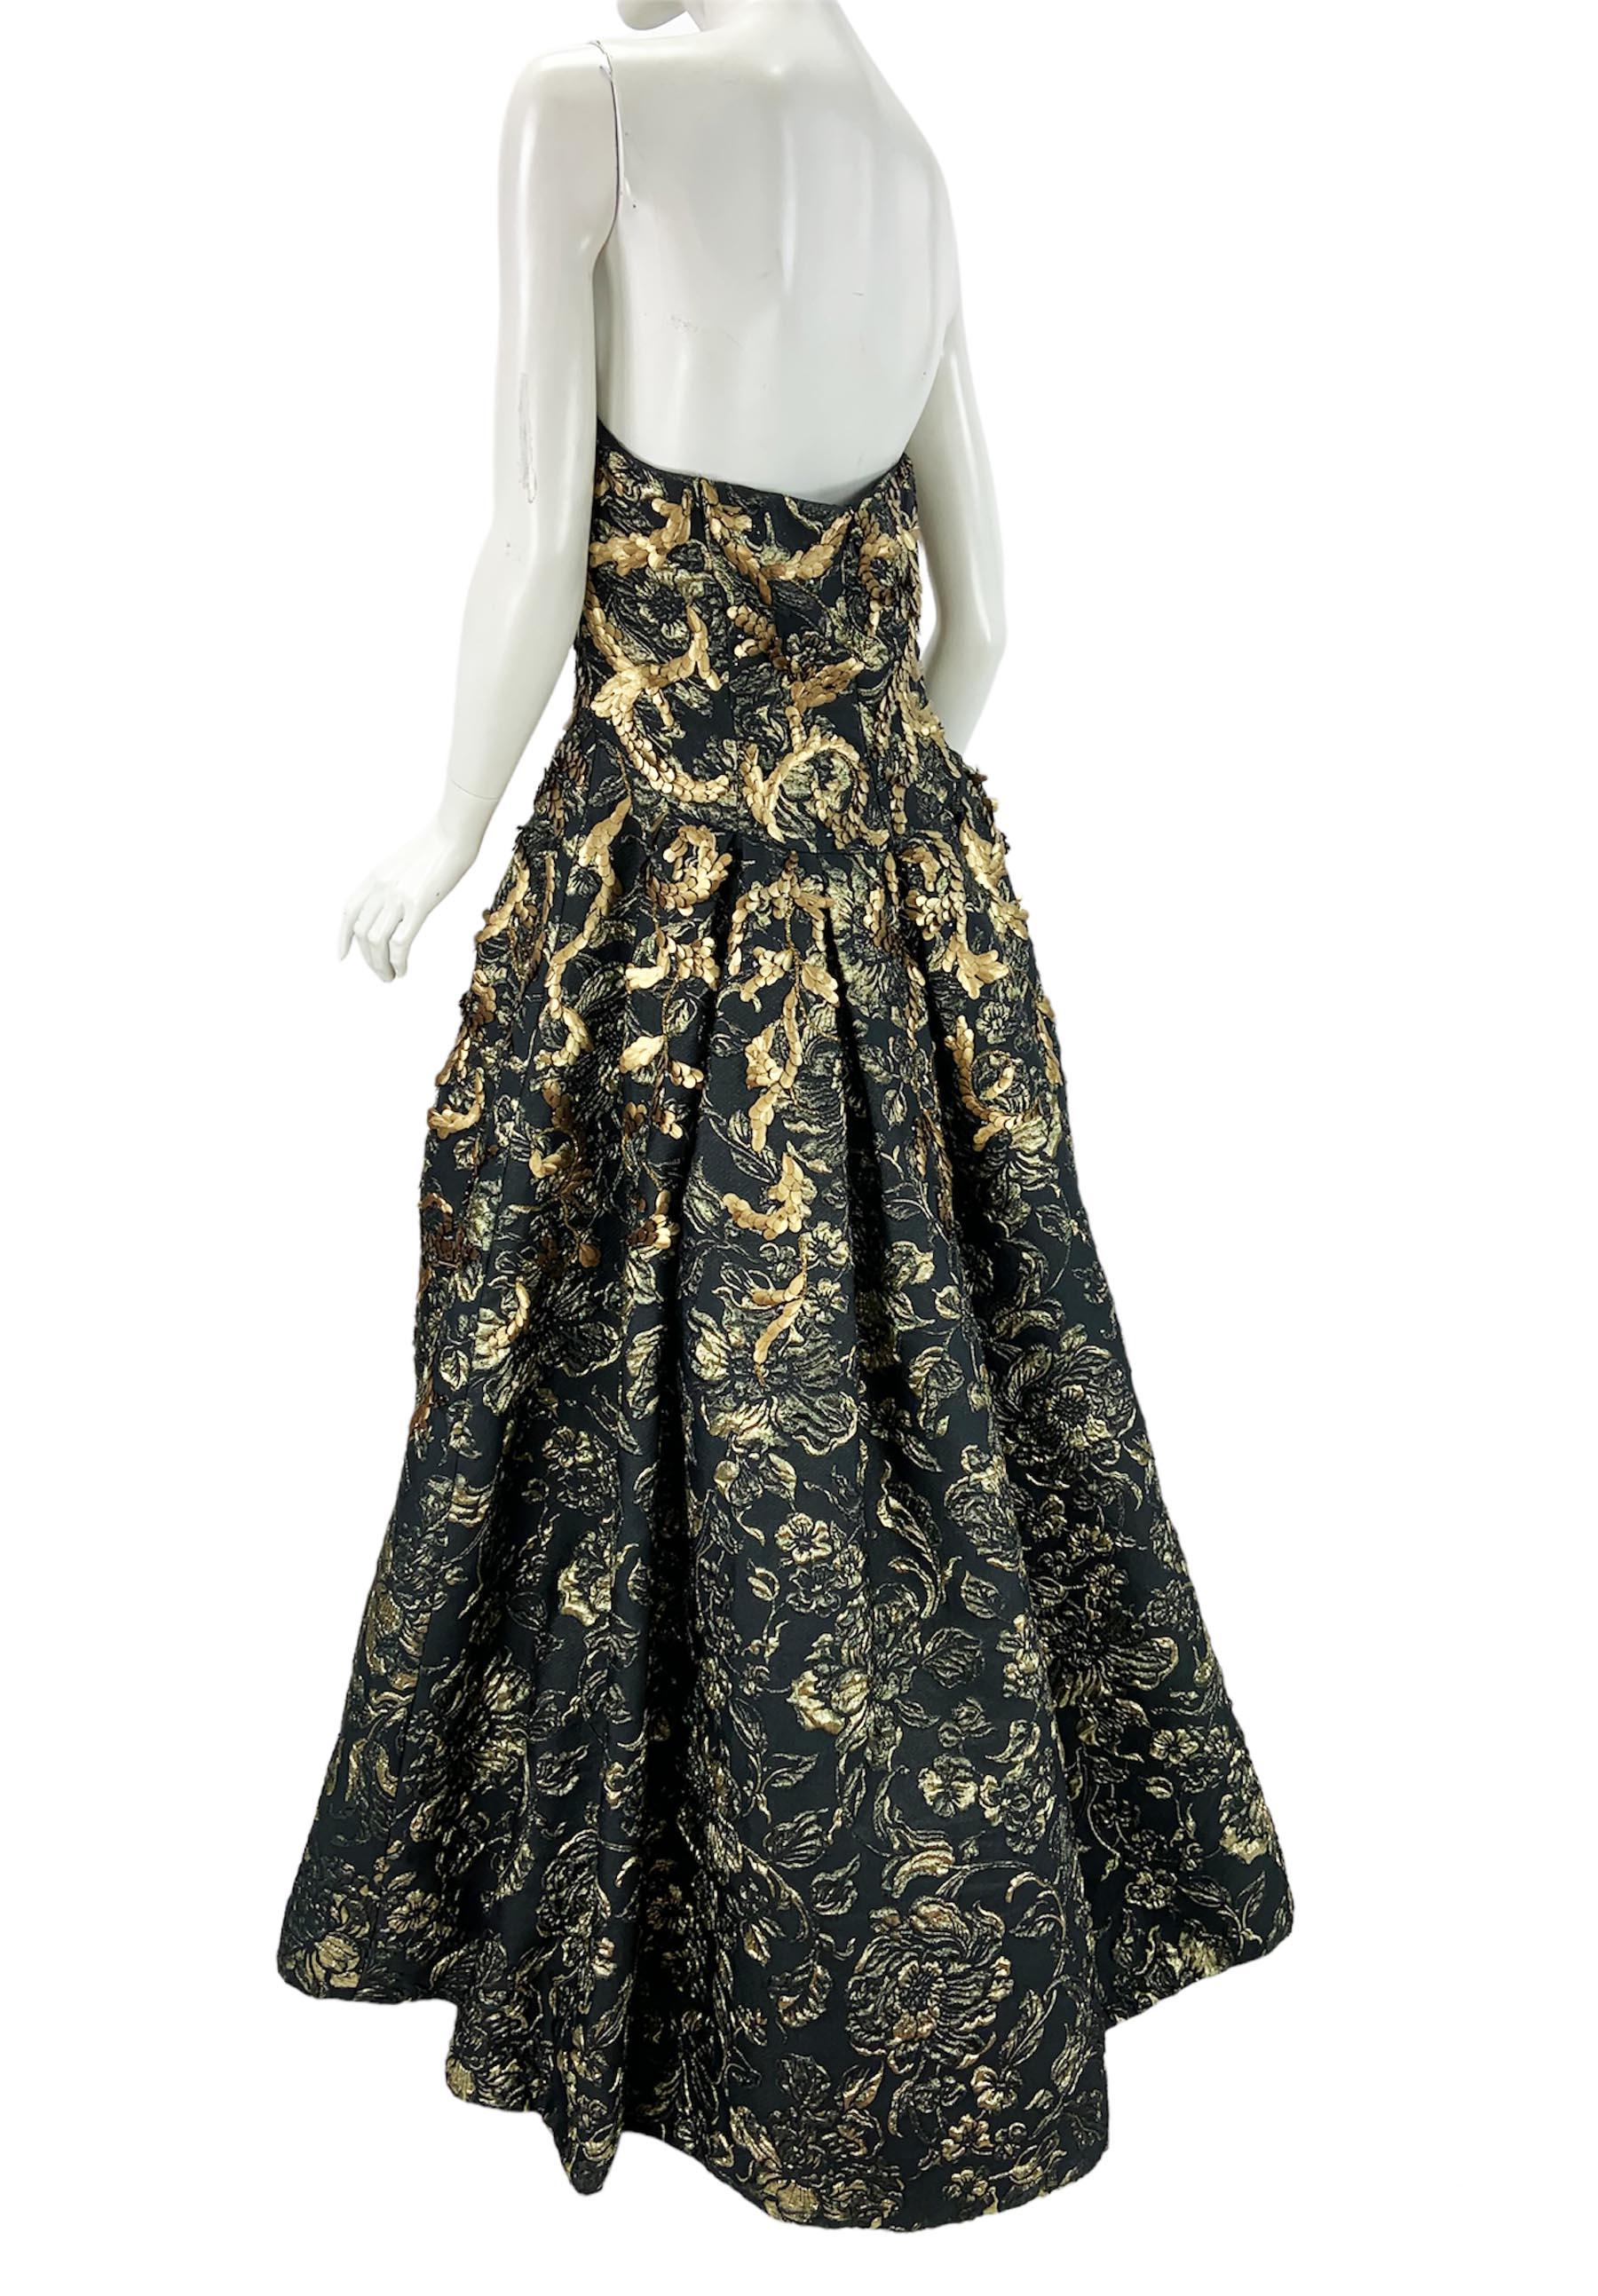 Oscar de la Renta FW 2014 Runway Museum Red Carpet Black Gold Gown Dress L / XL For Sale 4